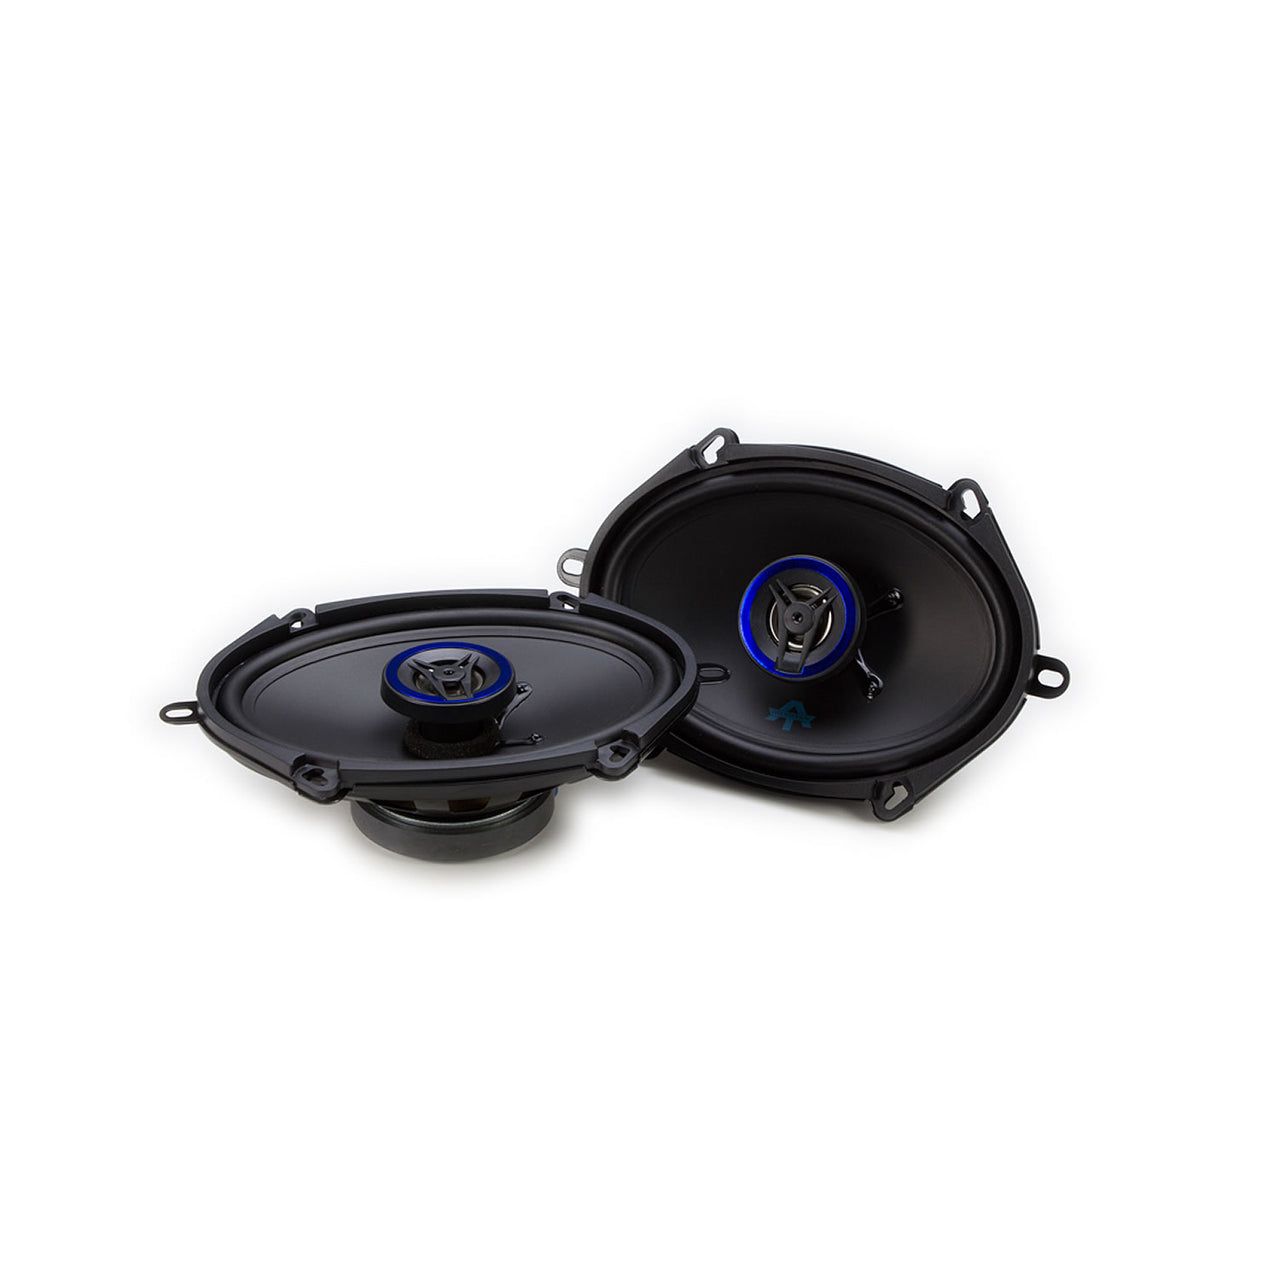 AUTOTEK ATS5768CX 250W 5 x7" 2-Way ATS Series Coaxial Car Speakers